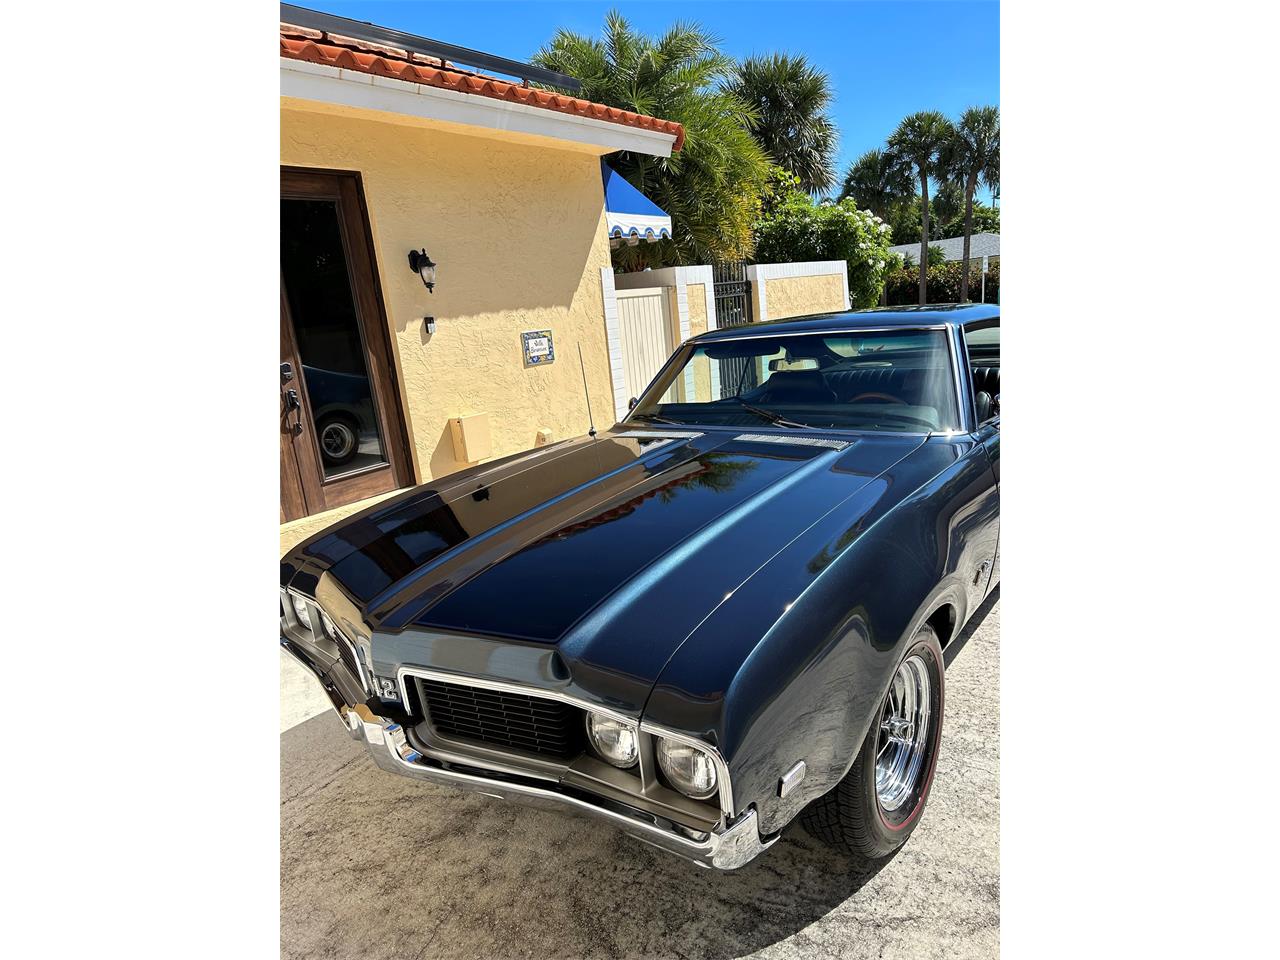 For Sale: 1969 Oldsmobile 442 in Ocean Ridge, Florida for sale in Boynton Beach, FL